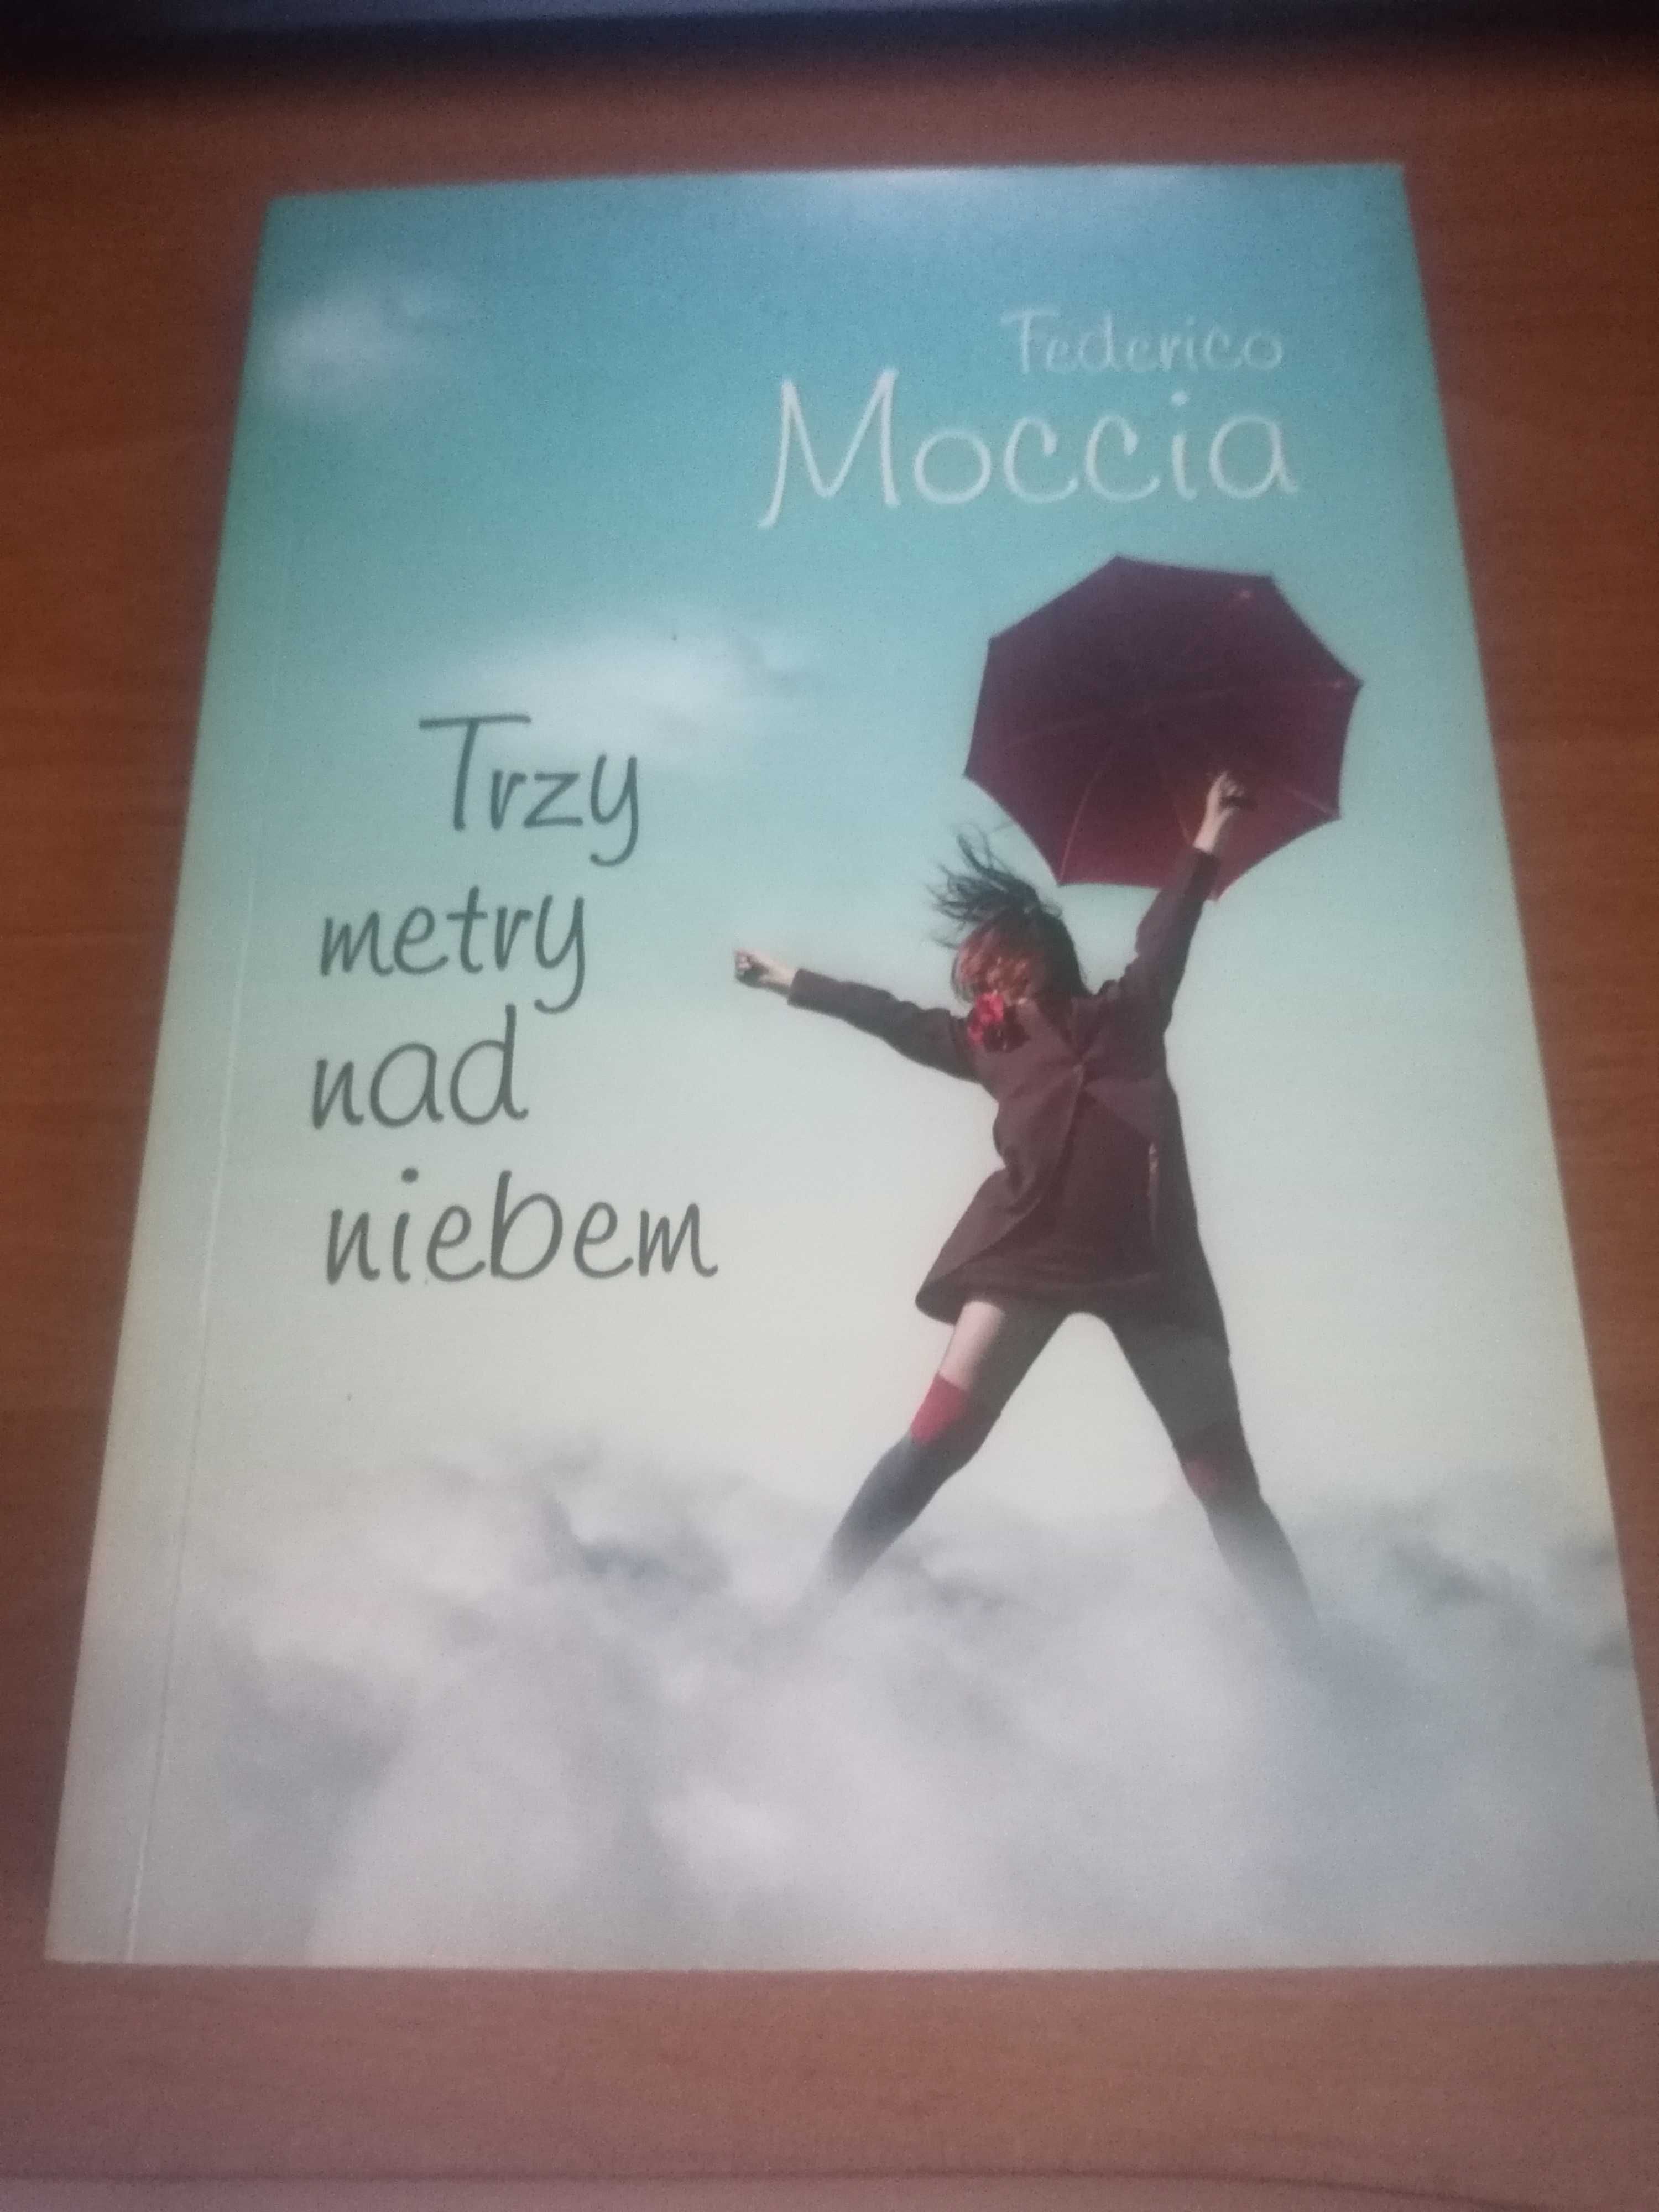 Książka Federico Moccia "Trzy metry nad niebem"